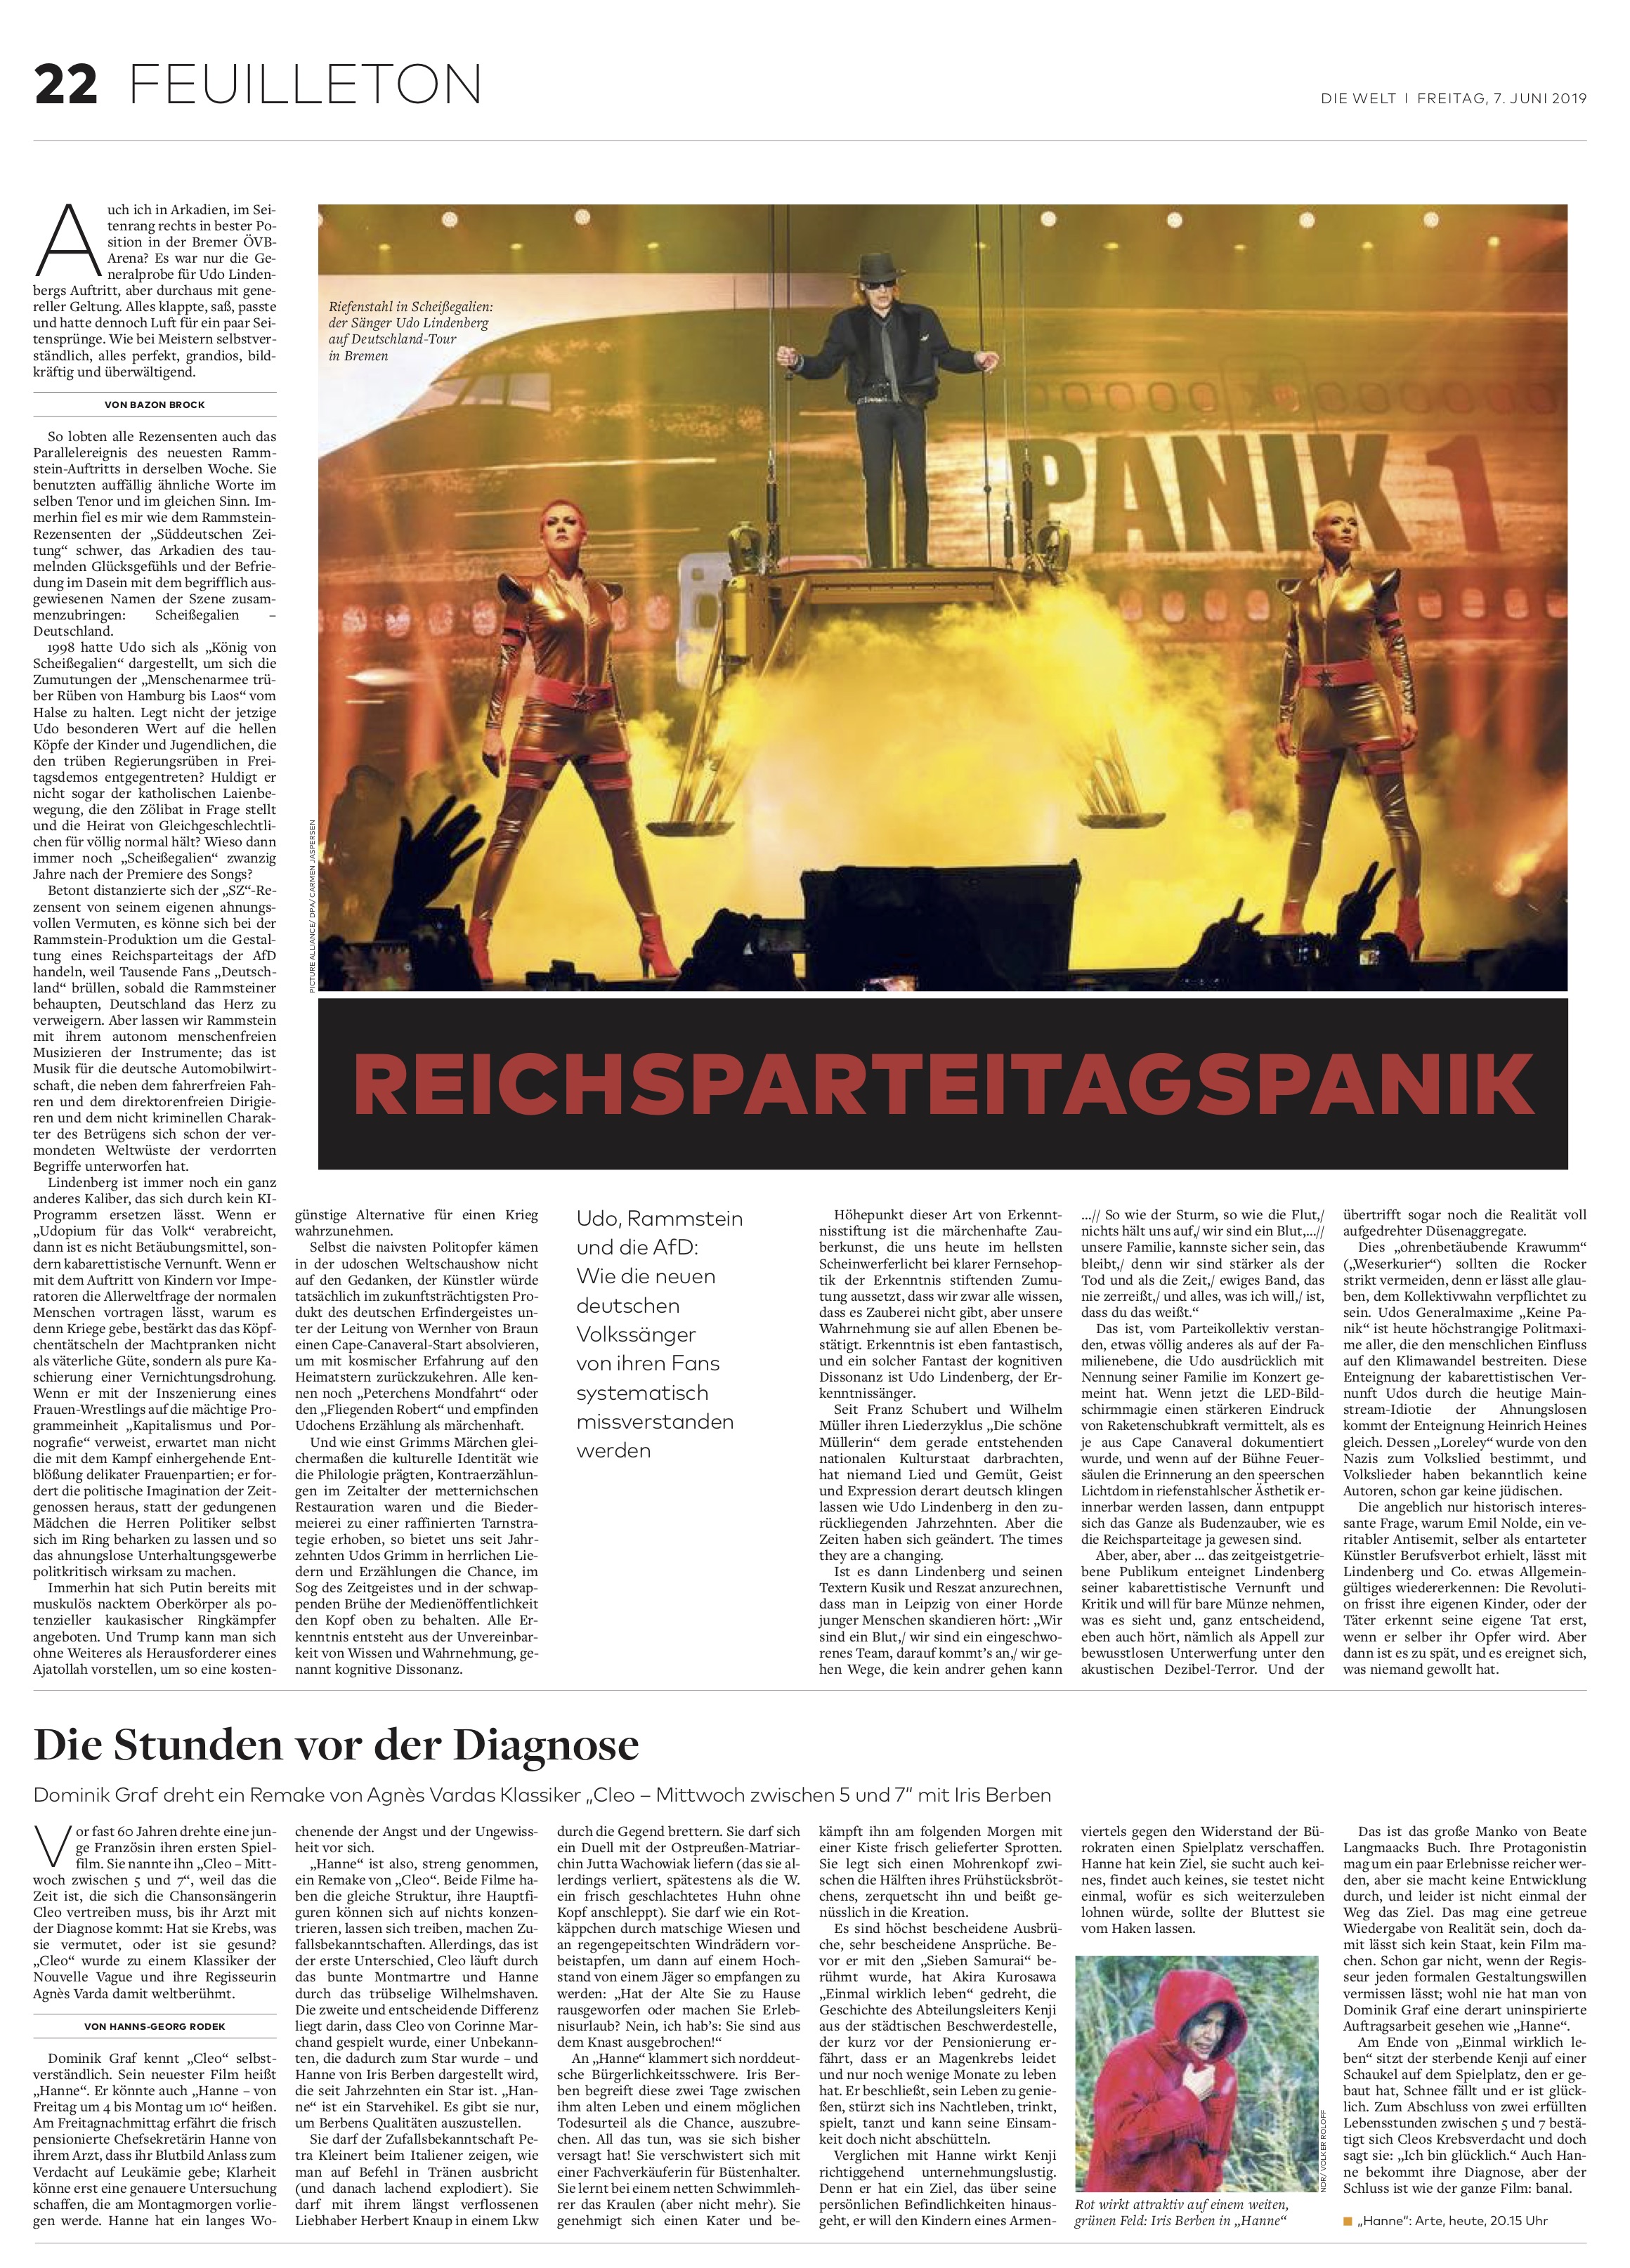 Reichsparteitagspanik, Bild: Die Welt, 07.06.2019.